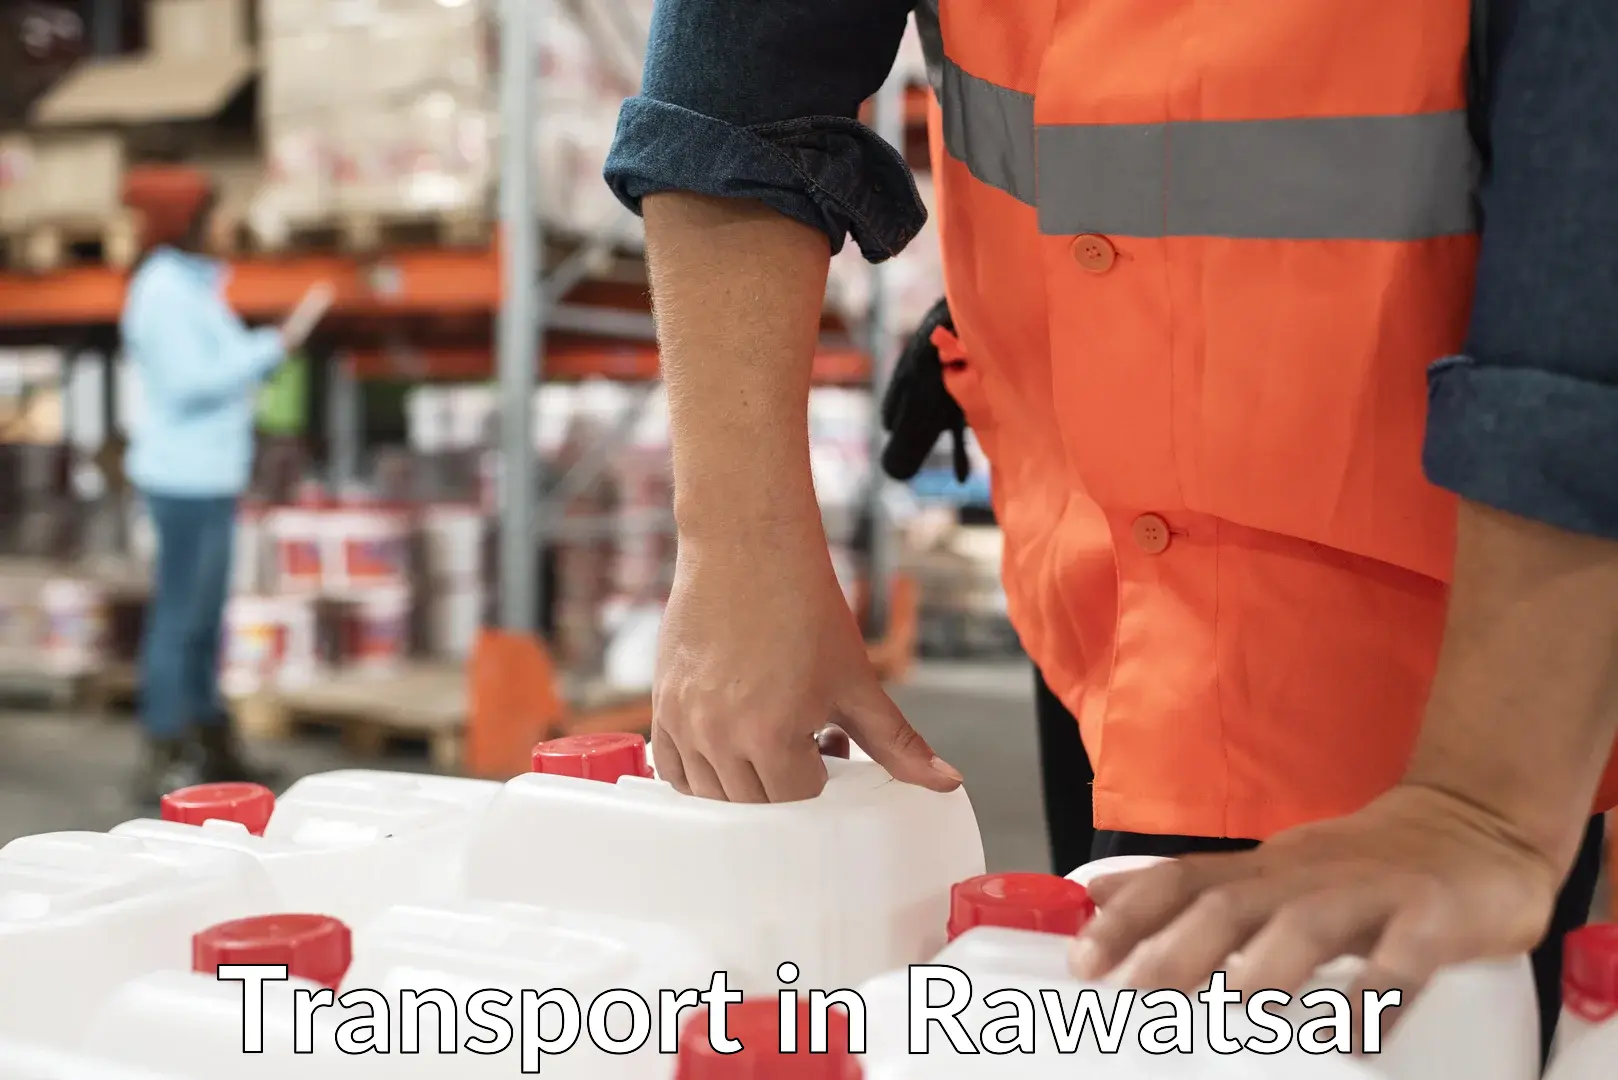 Transportation services in Rawatsar